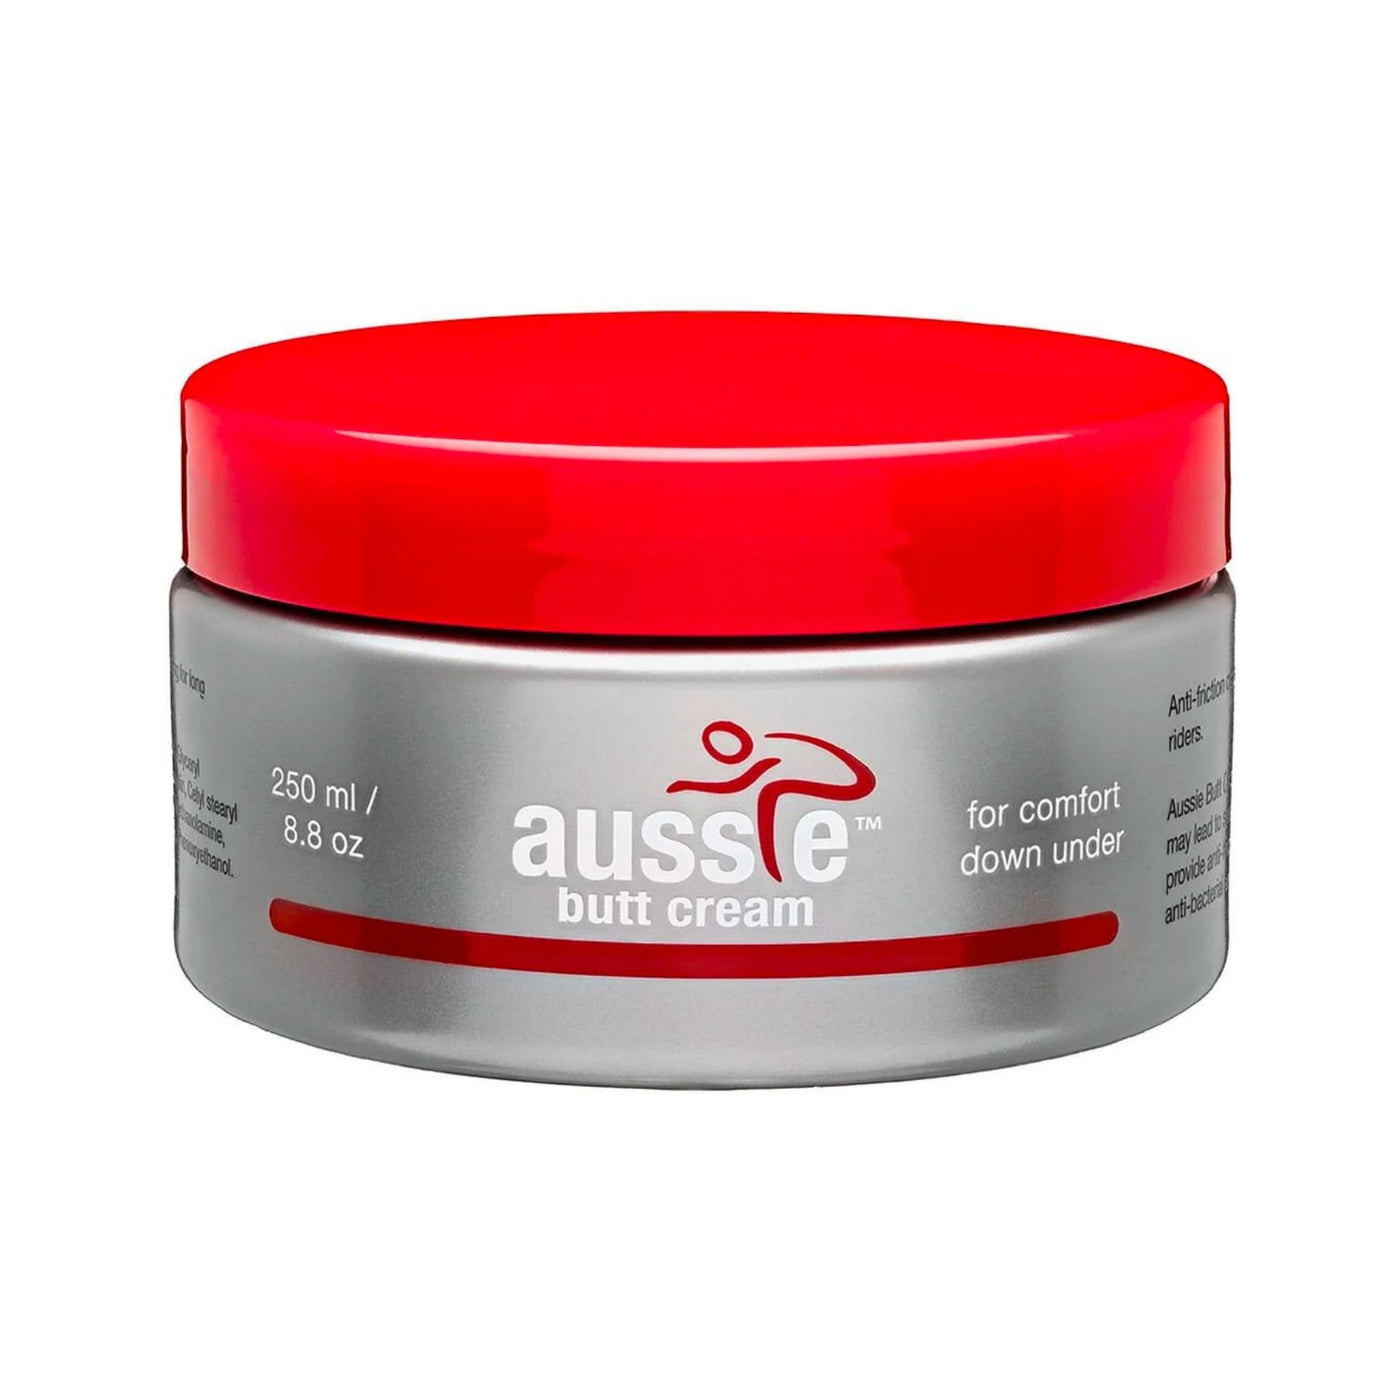 Aussie Butt Cream Jar 250mL